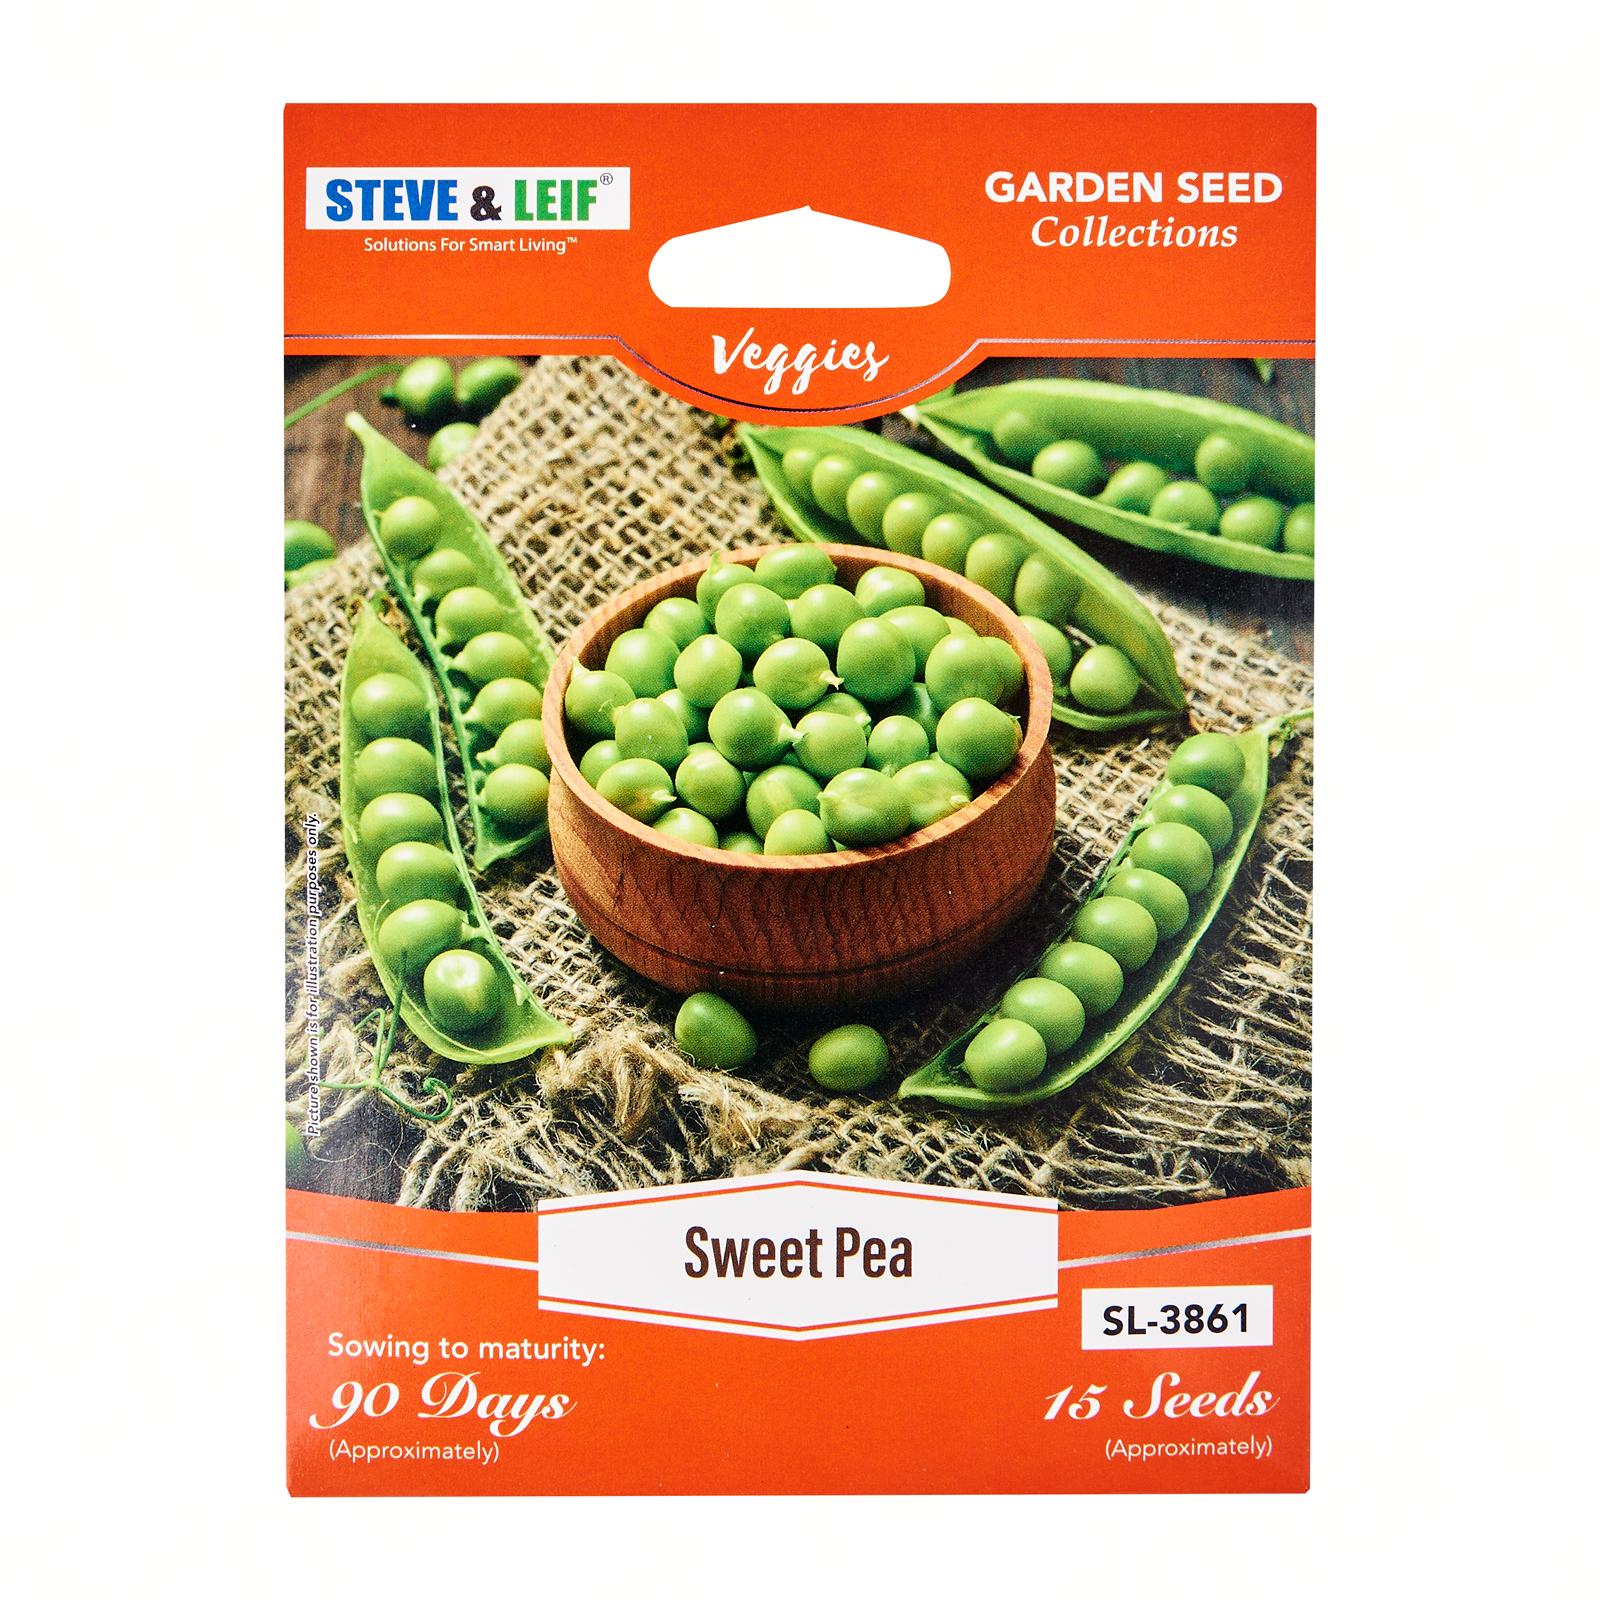 Steve & Leif Sweet Pea Seeds (16 Seeds) - Bundle of 16  Lazada